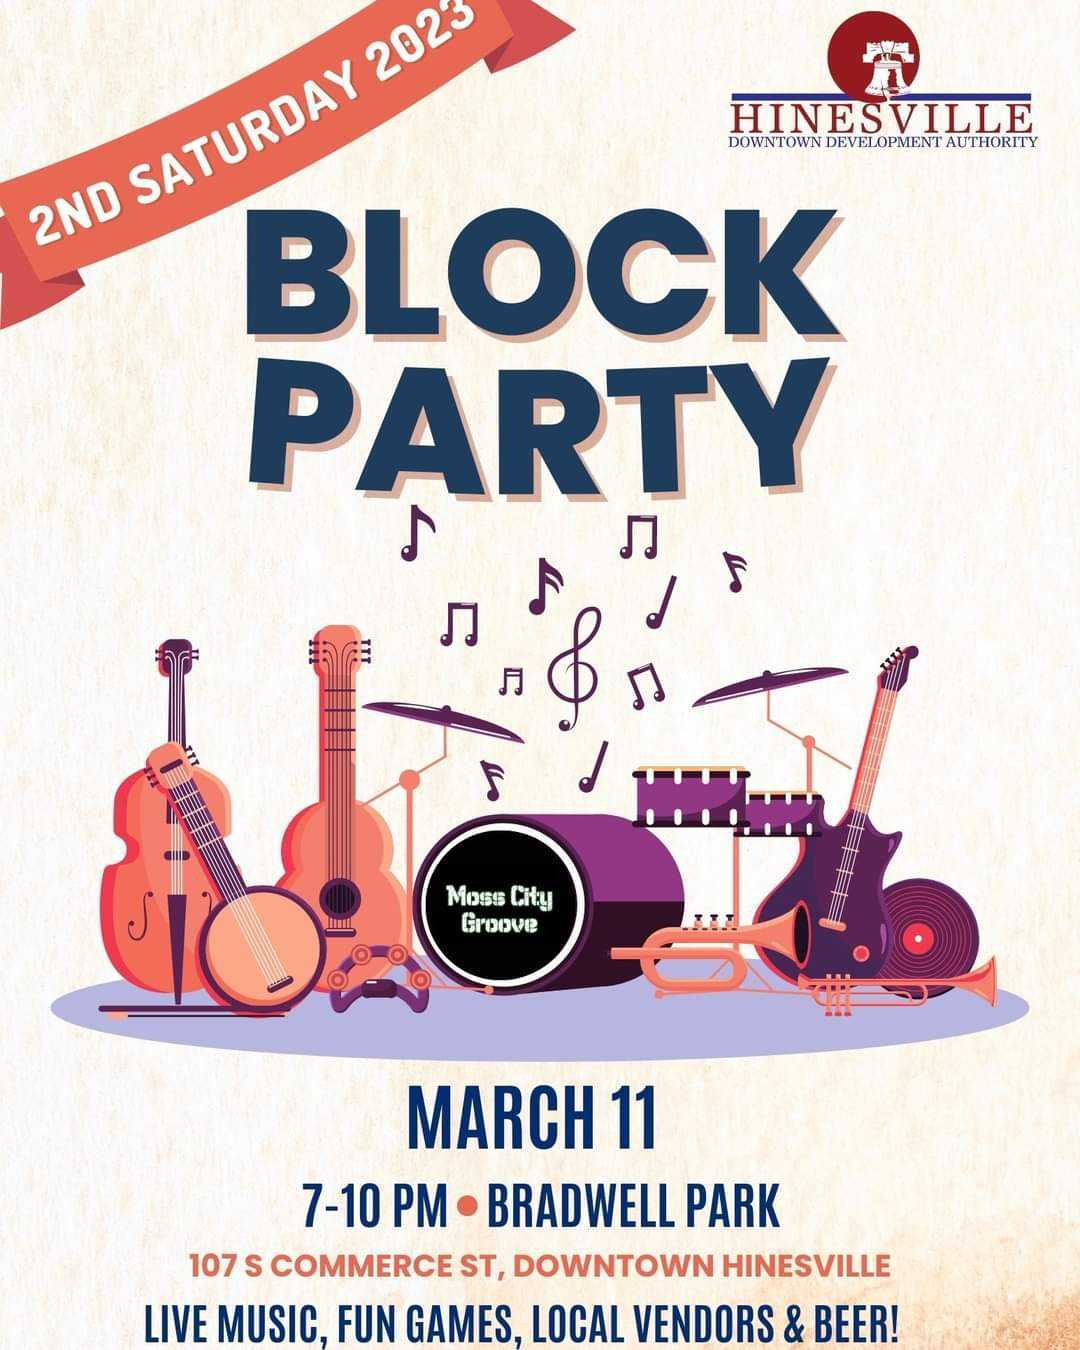 HDDA Block Party Flyer